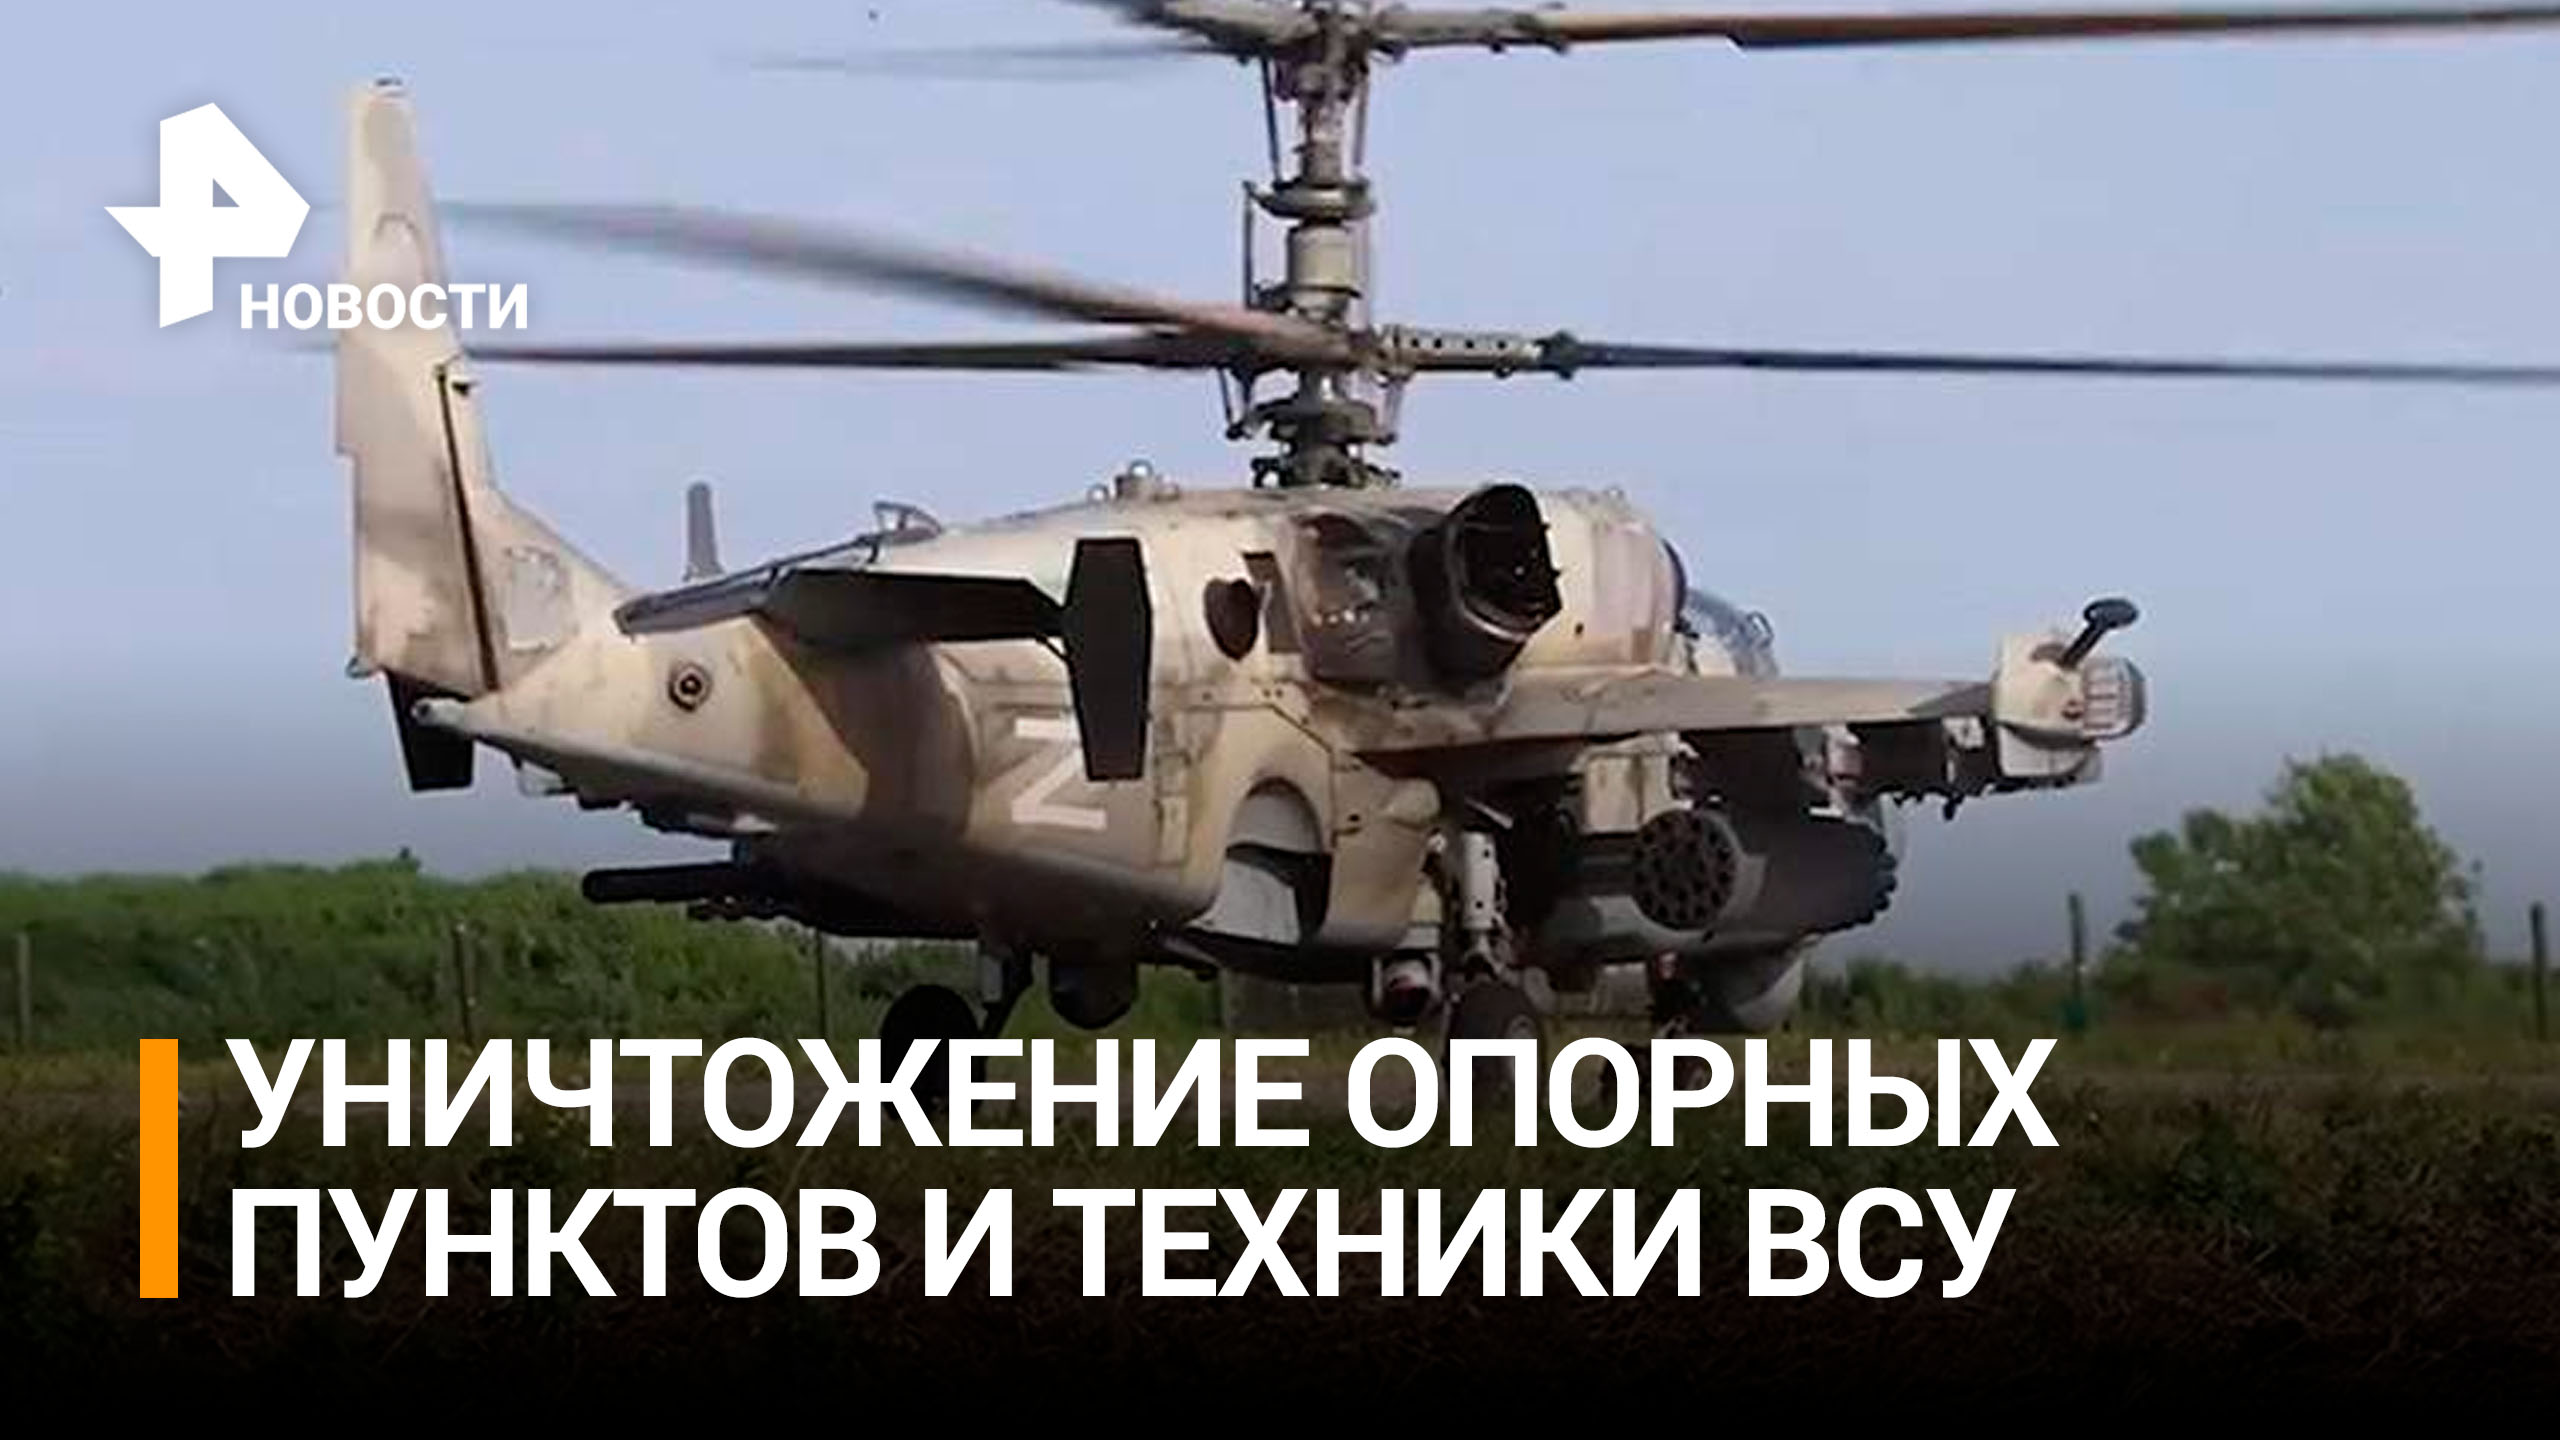 Вертолеты Ка-52 уничтожили опорные пункты и технику ВСУ / РЕН Новости